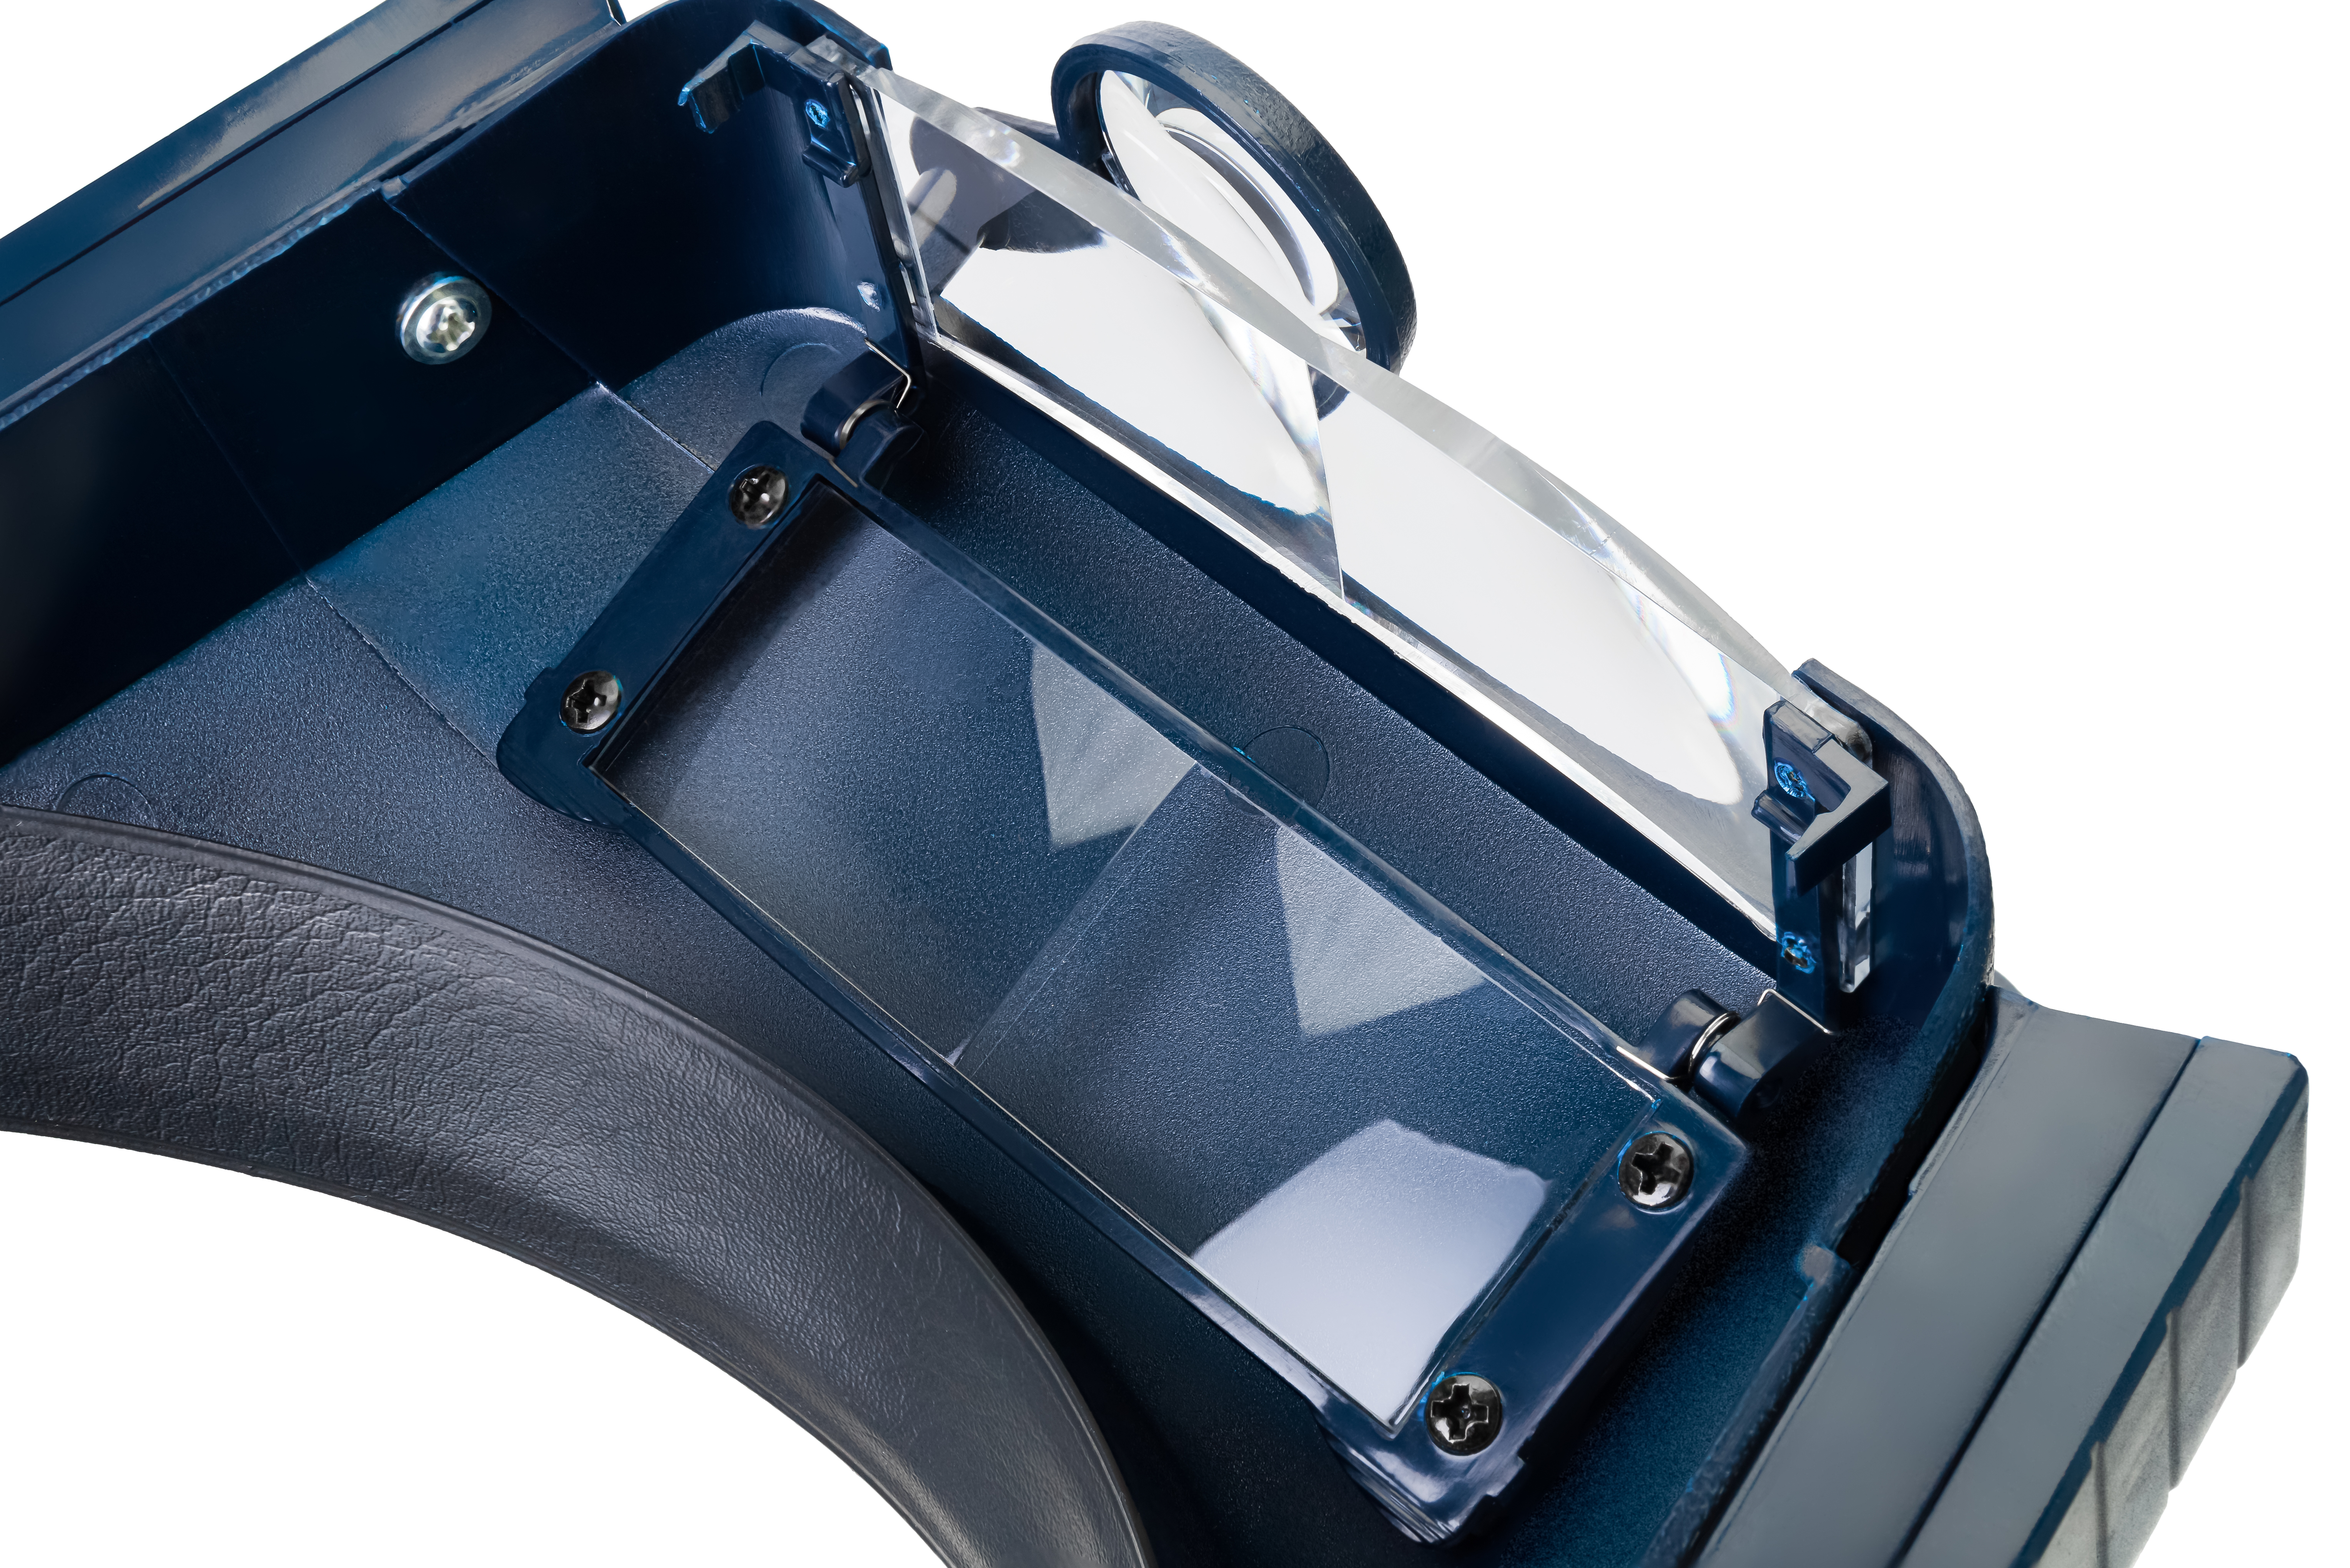 Optická sústava lupy Discovery Crafts DHR 10 sa skladá z 2 obdĺžnikových šošoviek nasadených za sebou a 1 kruhovej šošovky s výklopným dizajnom.